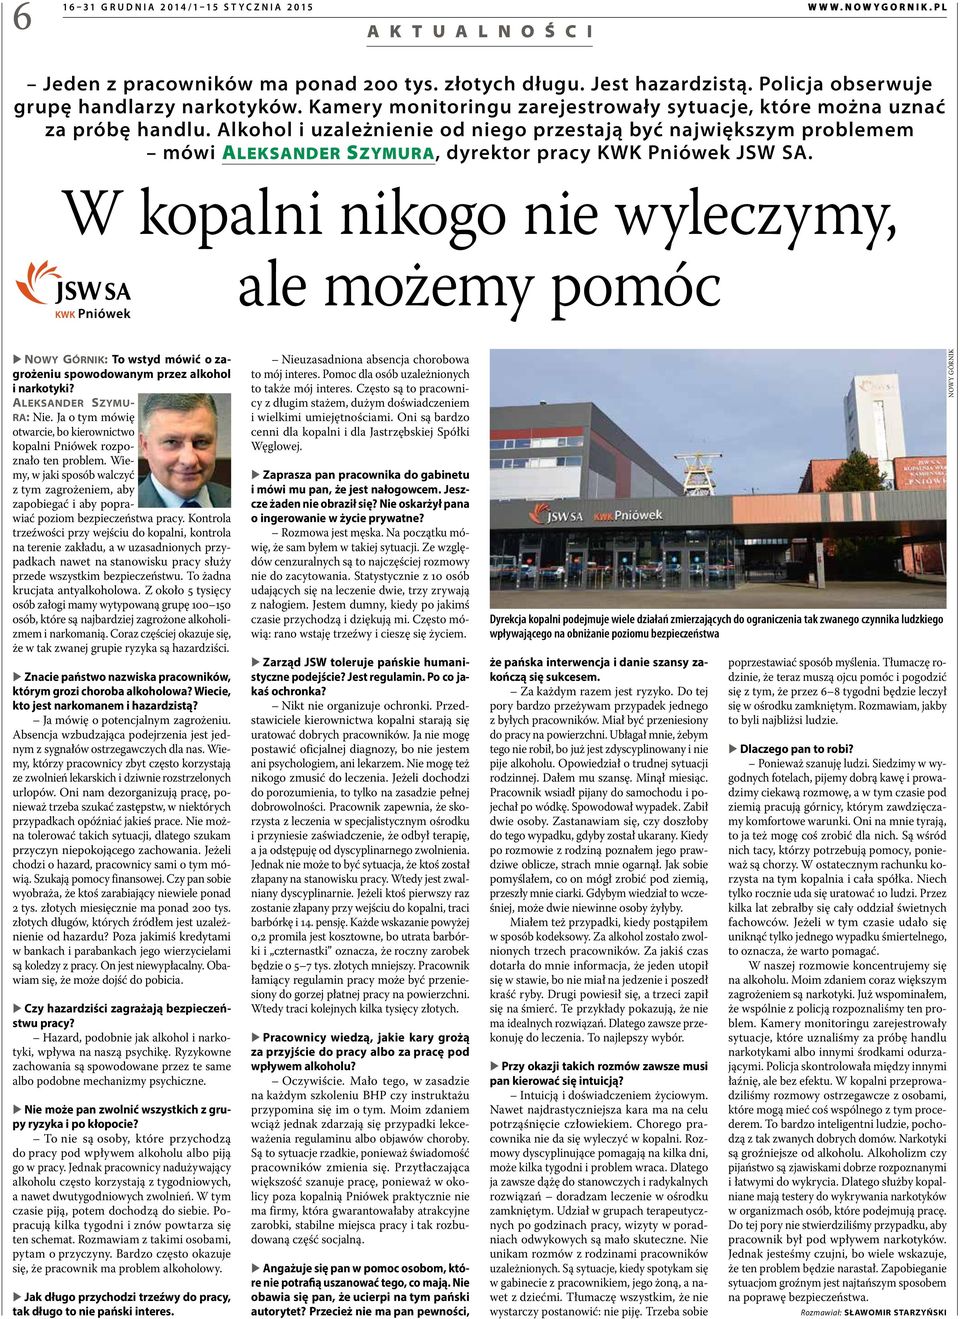 Alkohol i uzależnienie od niego przestają być największym problemem mówi Aleksander Szymura, dyrektor pracy KWK Pniówek JSW SA.